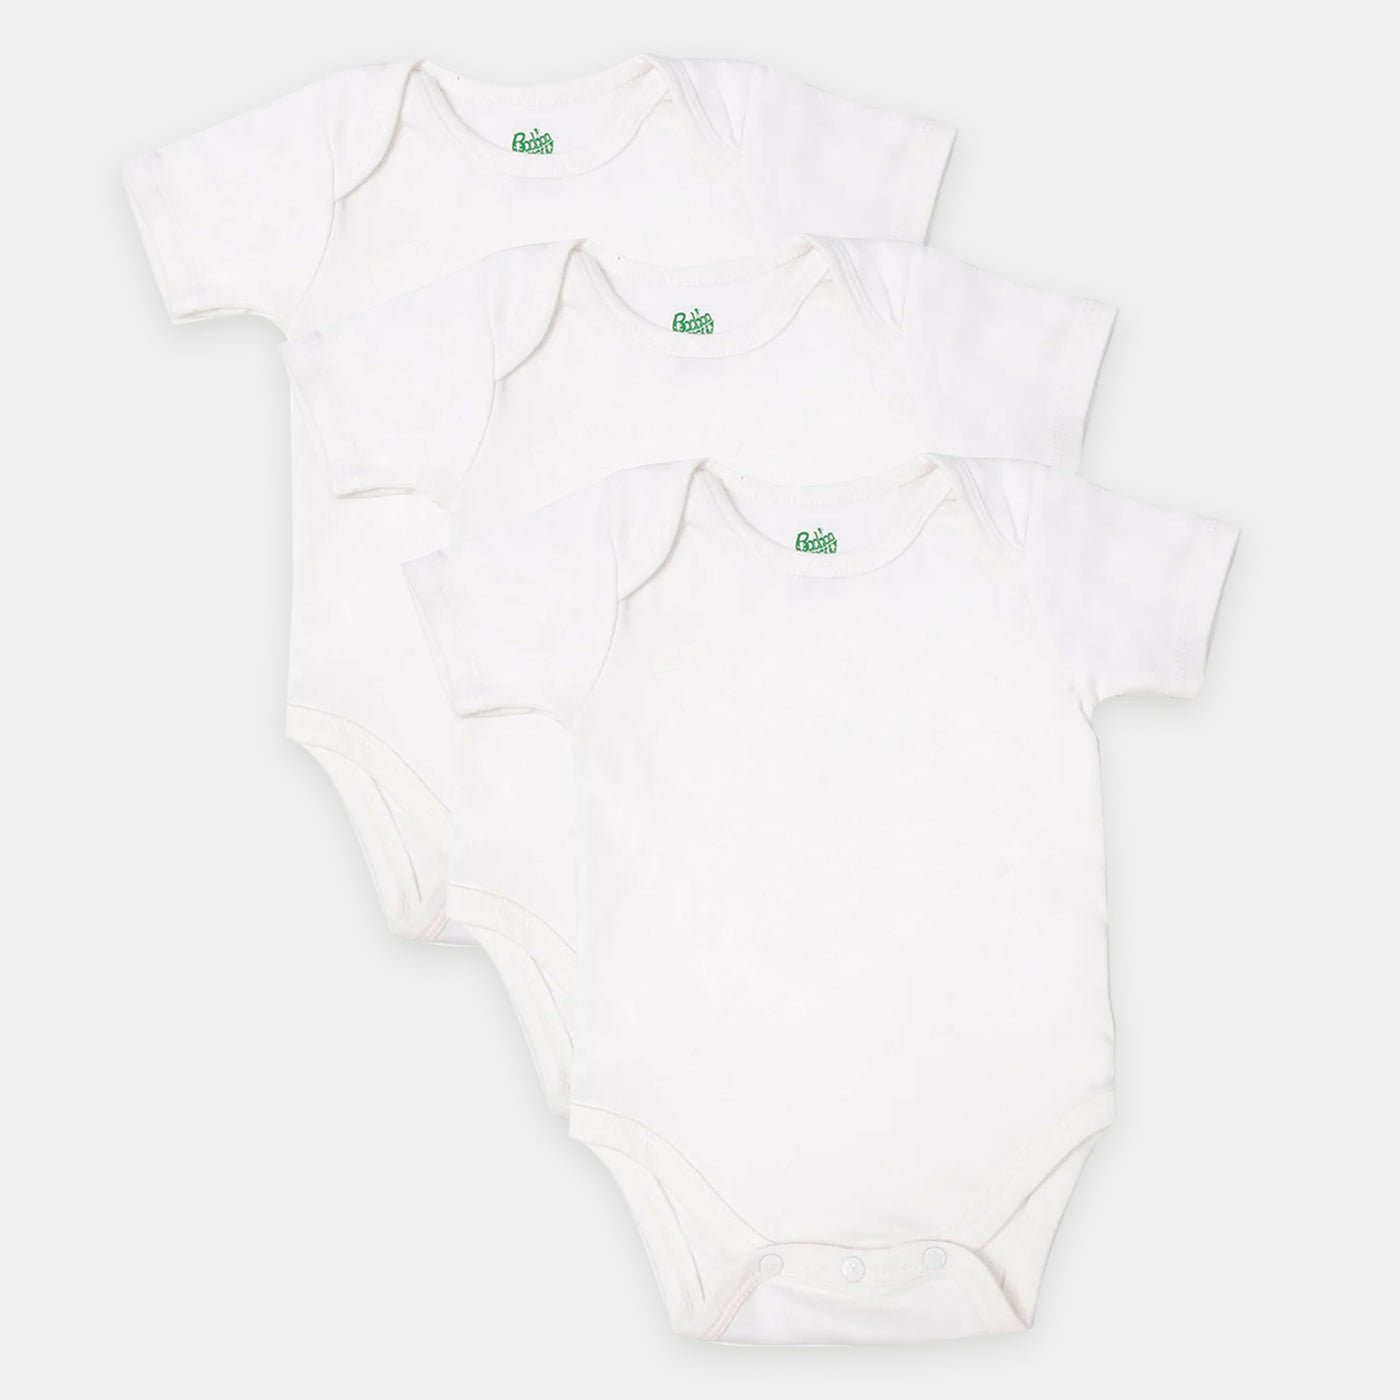 Infant Unisex Cotton Romper 3Pcs - White